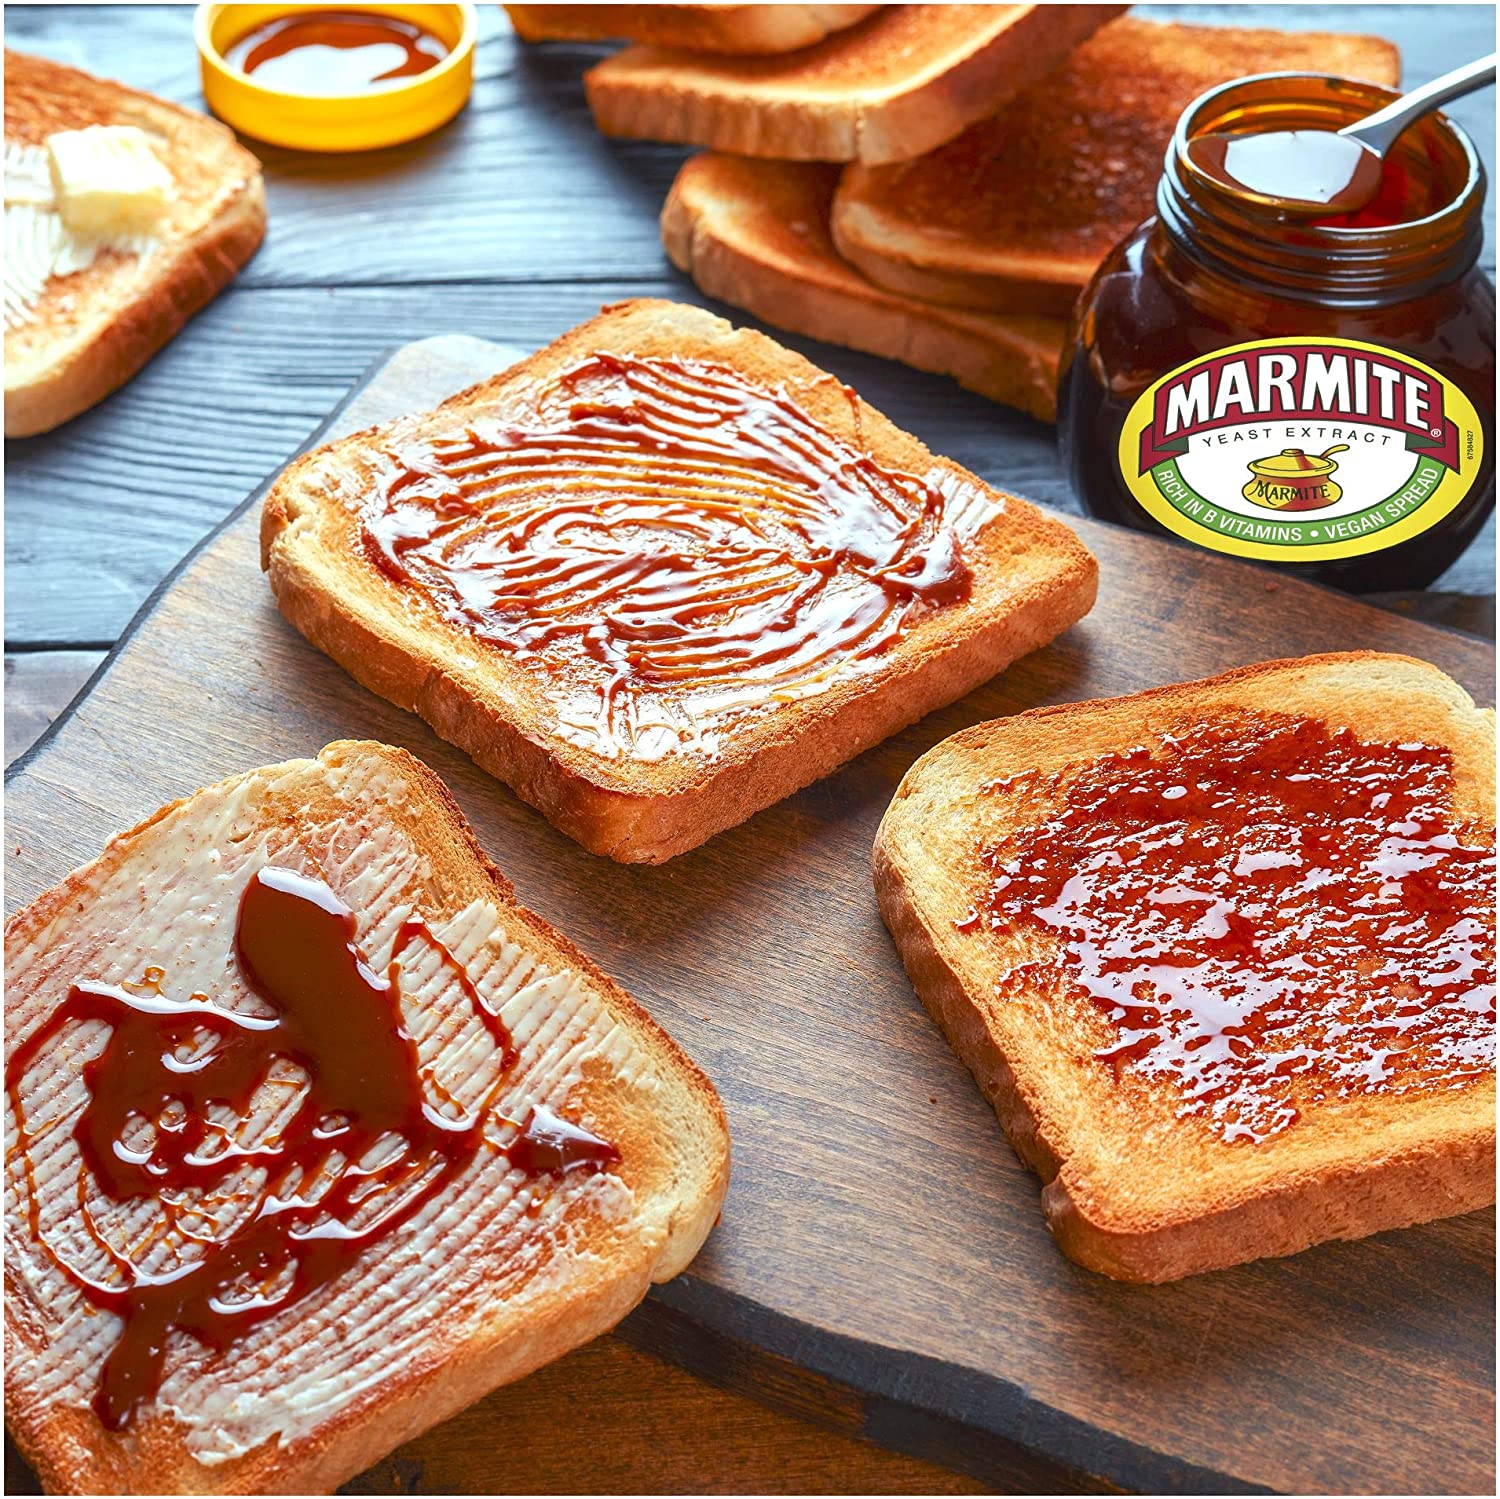 Tout savoir sur la Marmite, pâte salée à tartiner (produit britannique) -  Chez Becky et Liz, Blog de cuisine anglaise